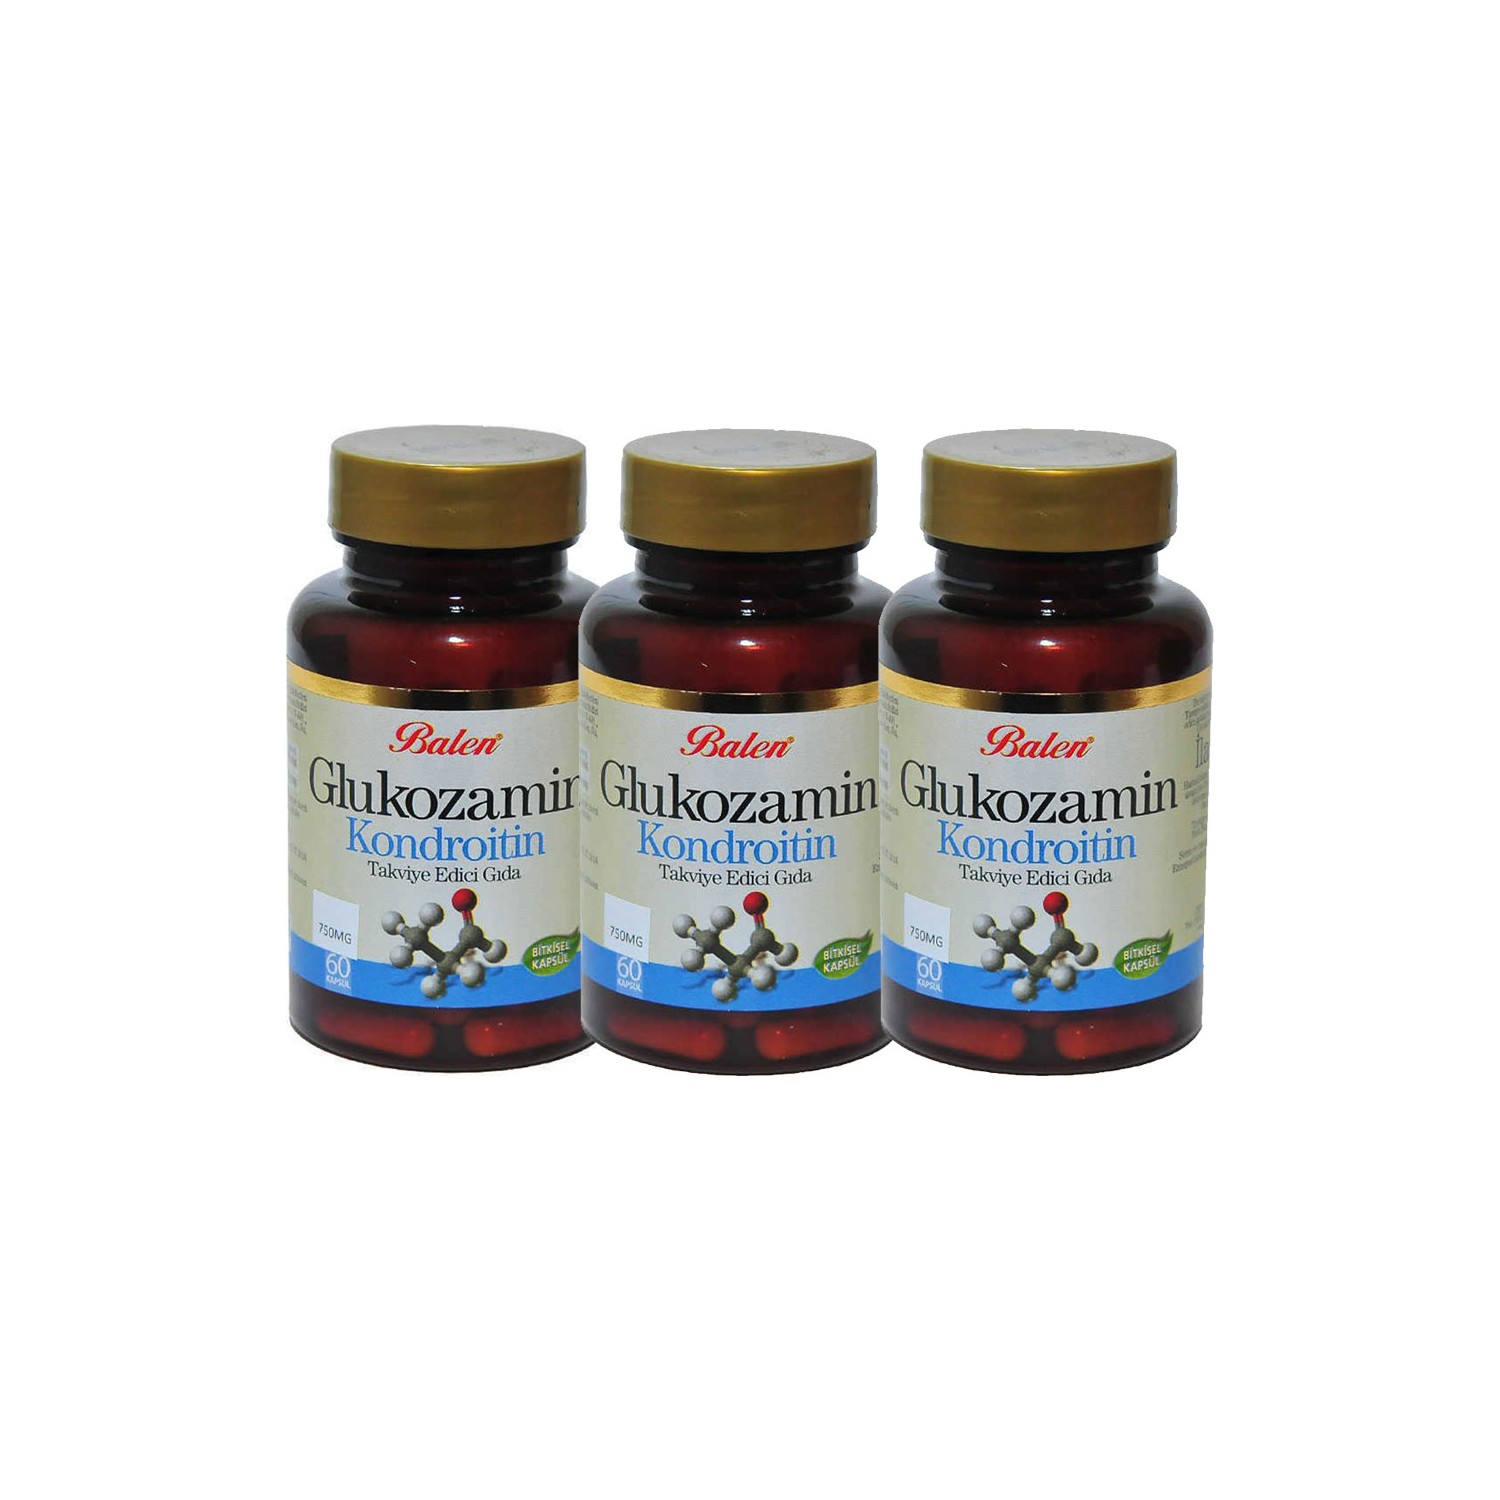 Активная добавка глюкозамин Balen Chondroitin, 60 капсул, 750 мг, 3 штуки curlsmith ultimate lengths 30 дневная терапия 60 капсул для легкого глотания